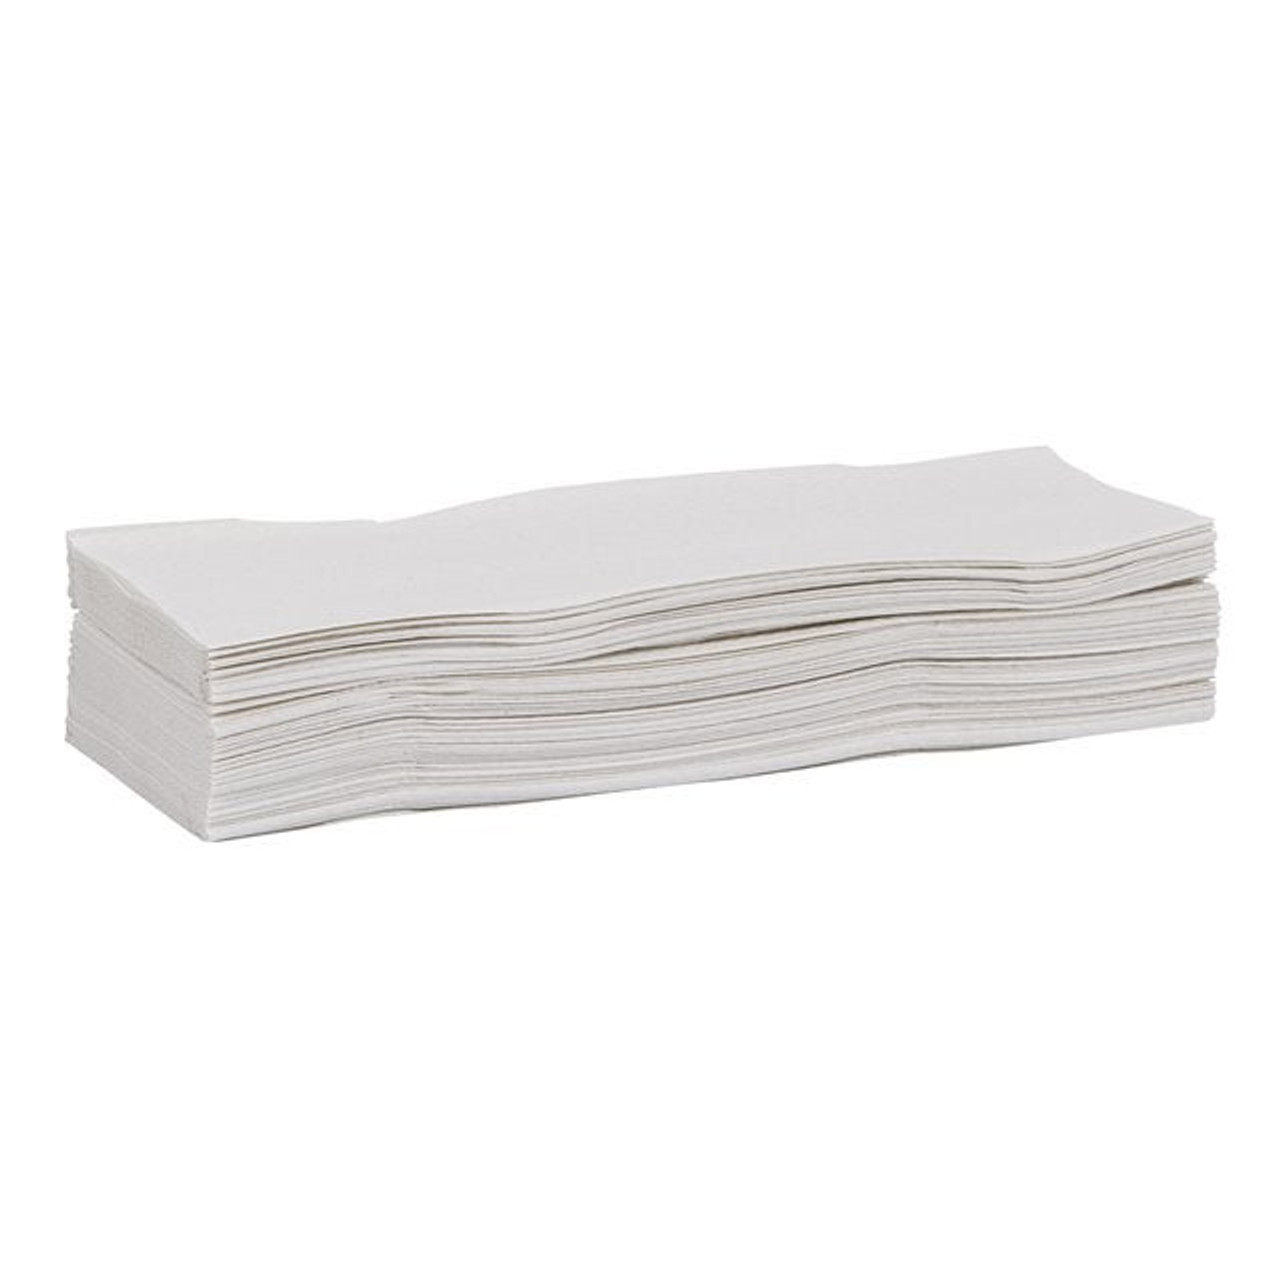 Array Multifold Towels, White 9.5 X 9.125In | 4000UN/Unit, 1 Unit/Case